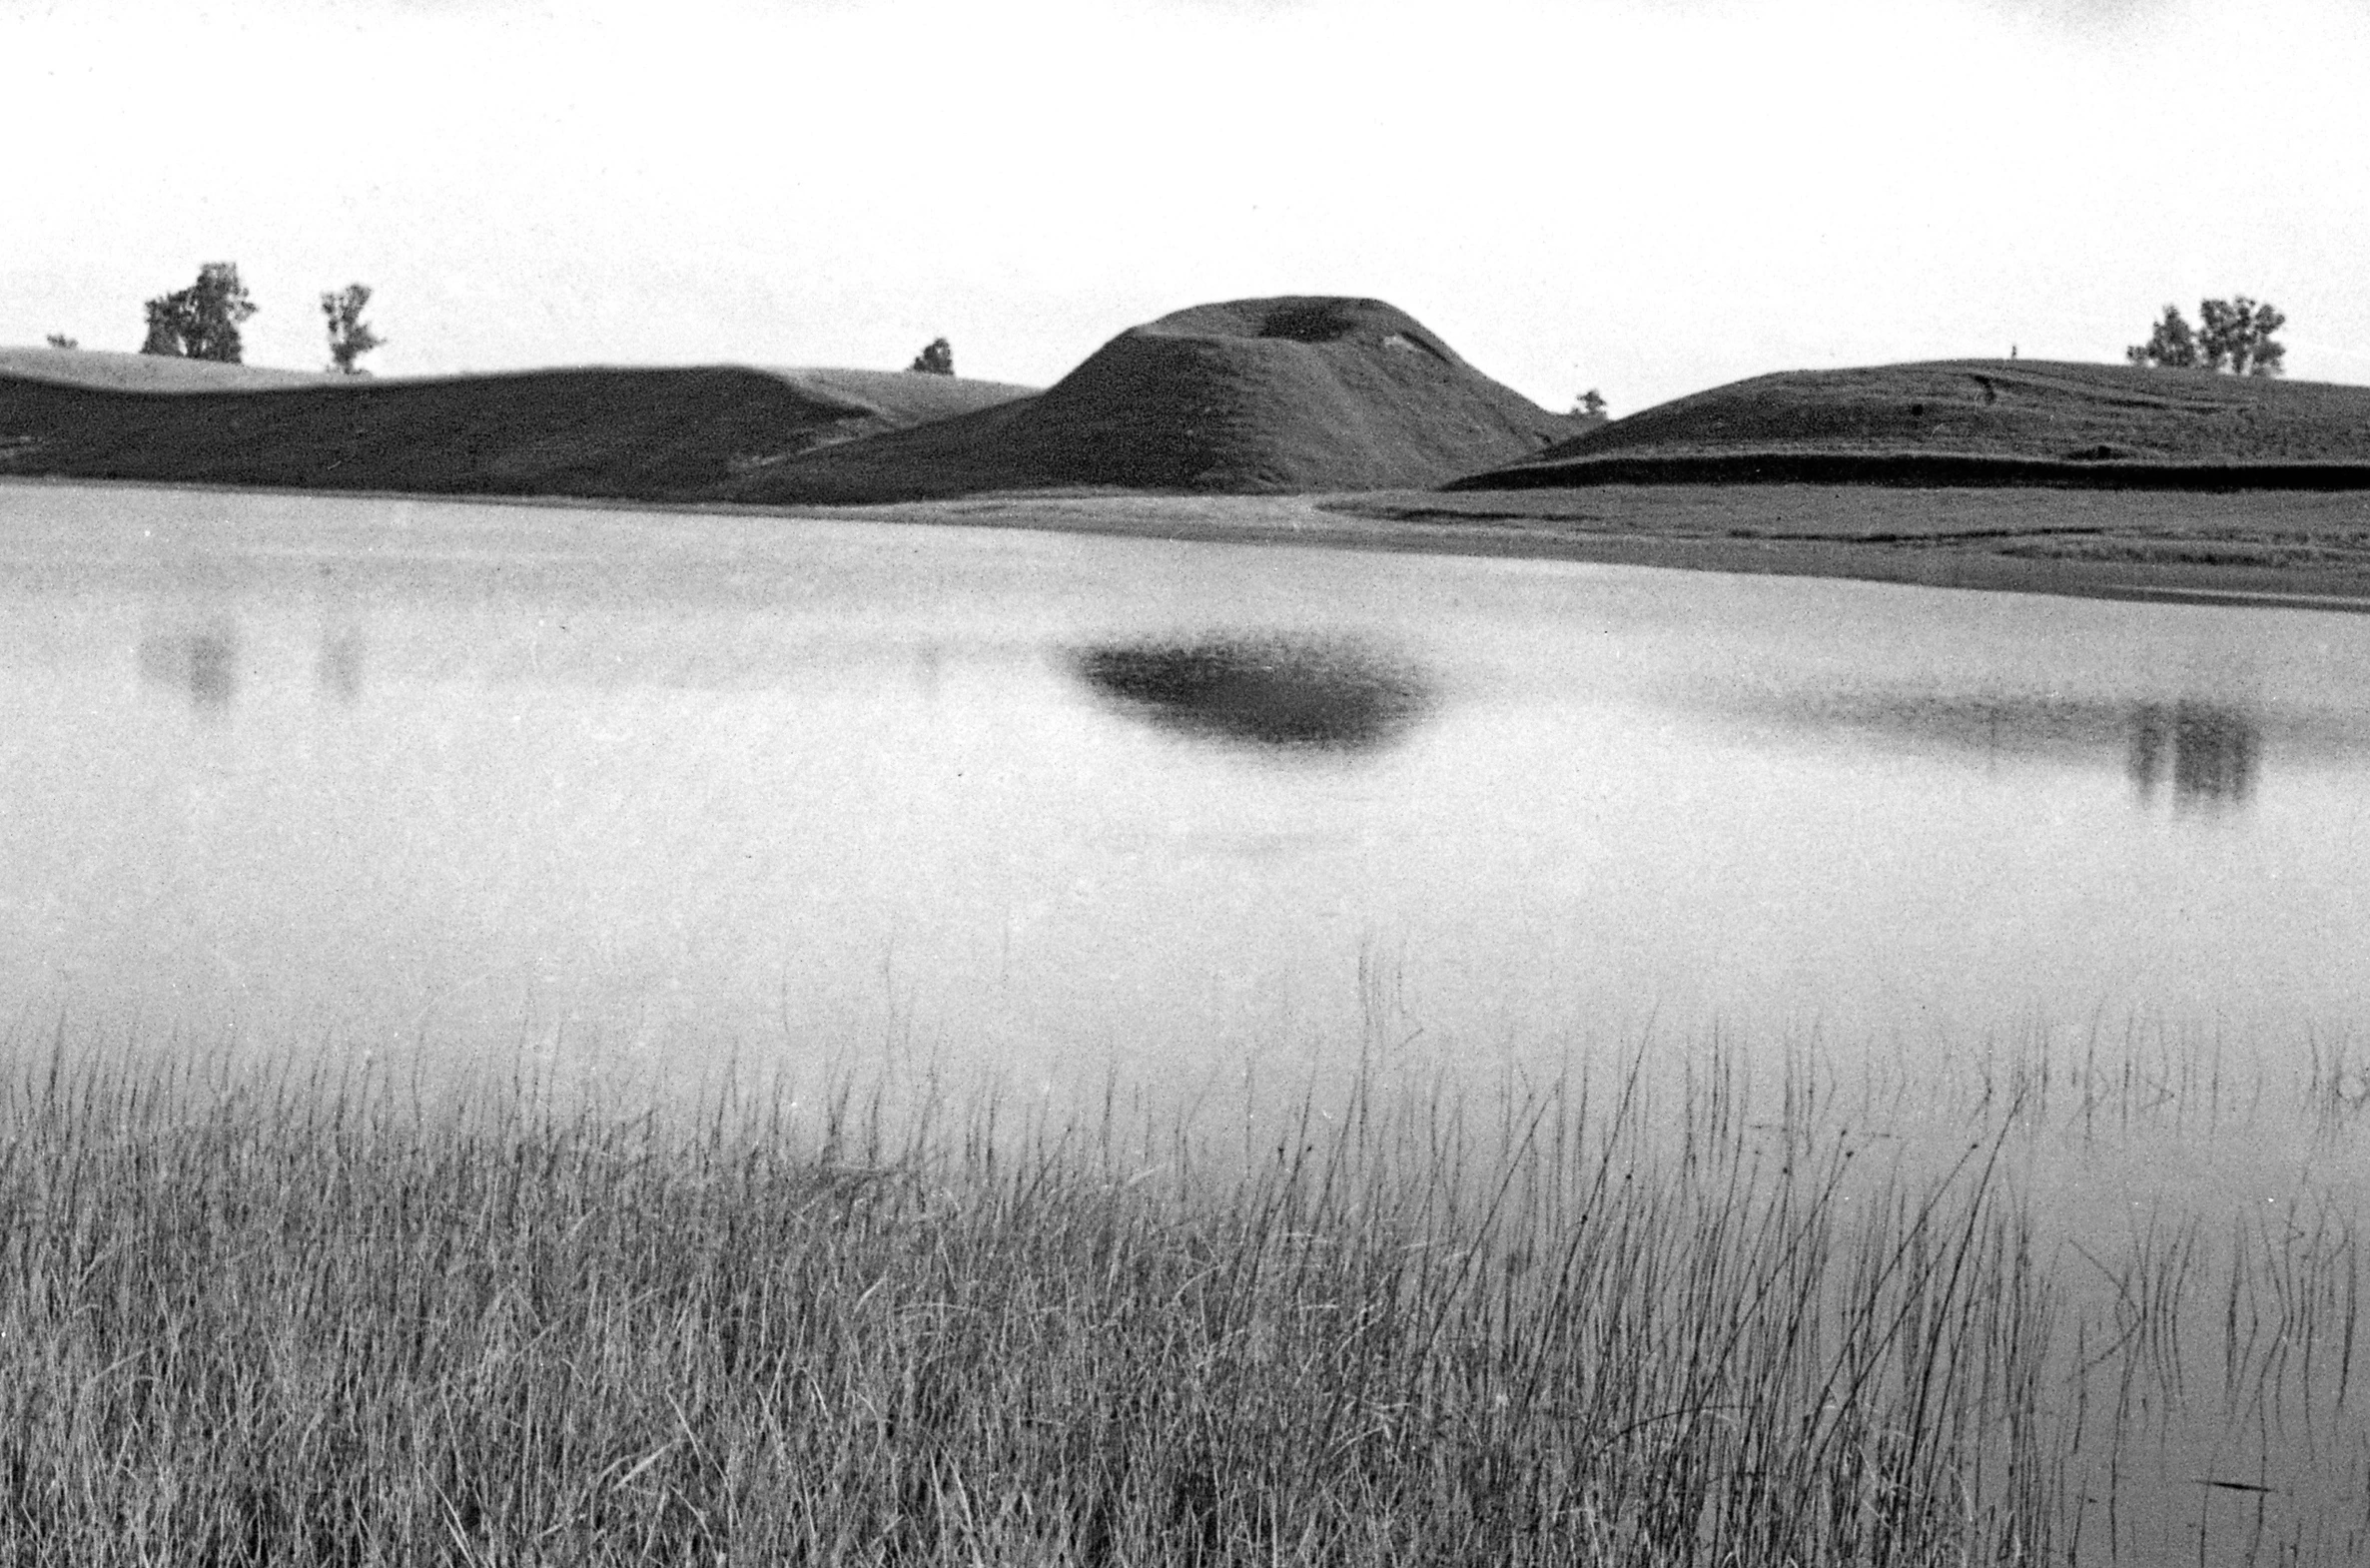 Dukurnonių piliakalnis (Prienų r.), žvelgiant iš už Surmiaus ežero. 